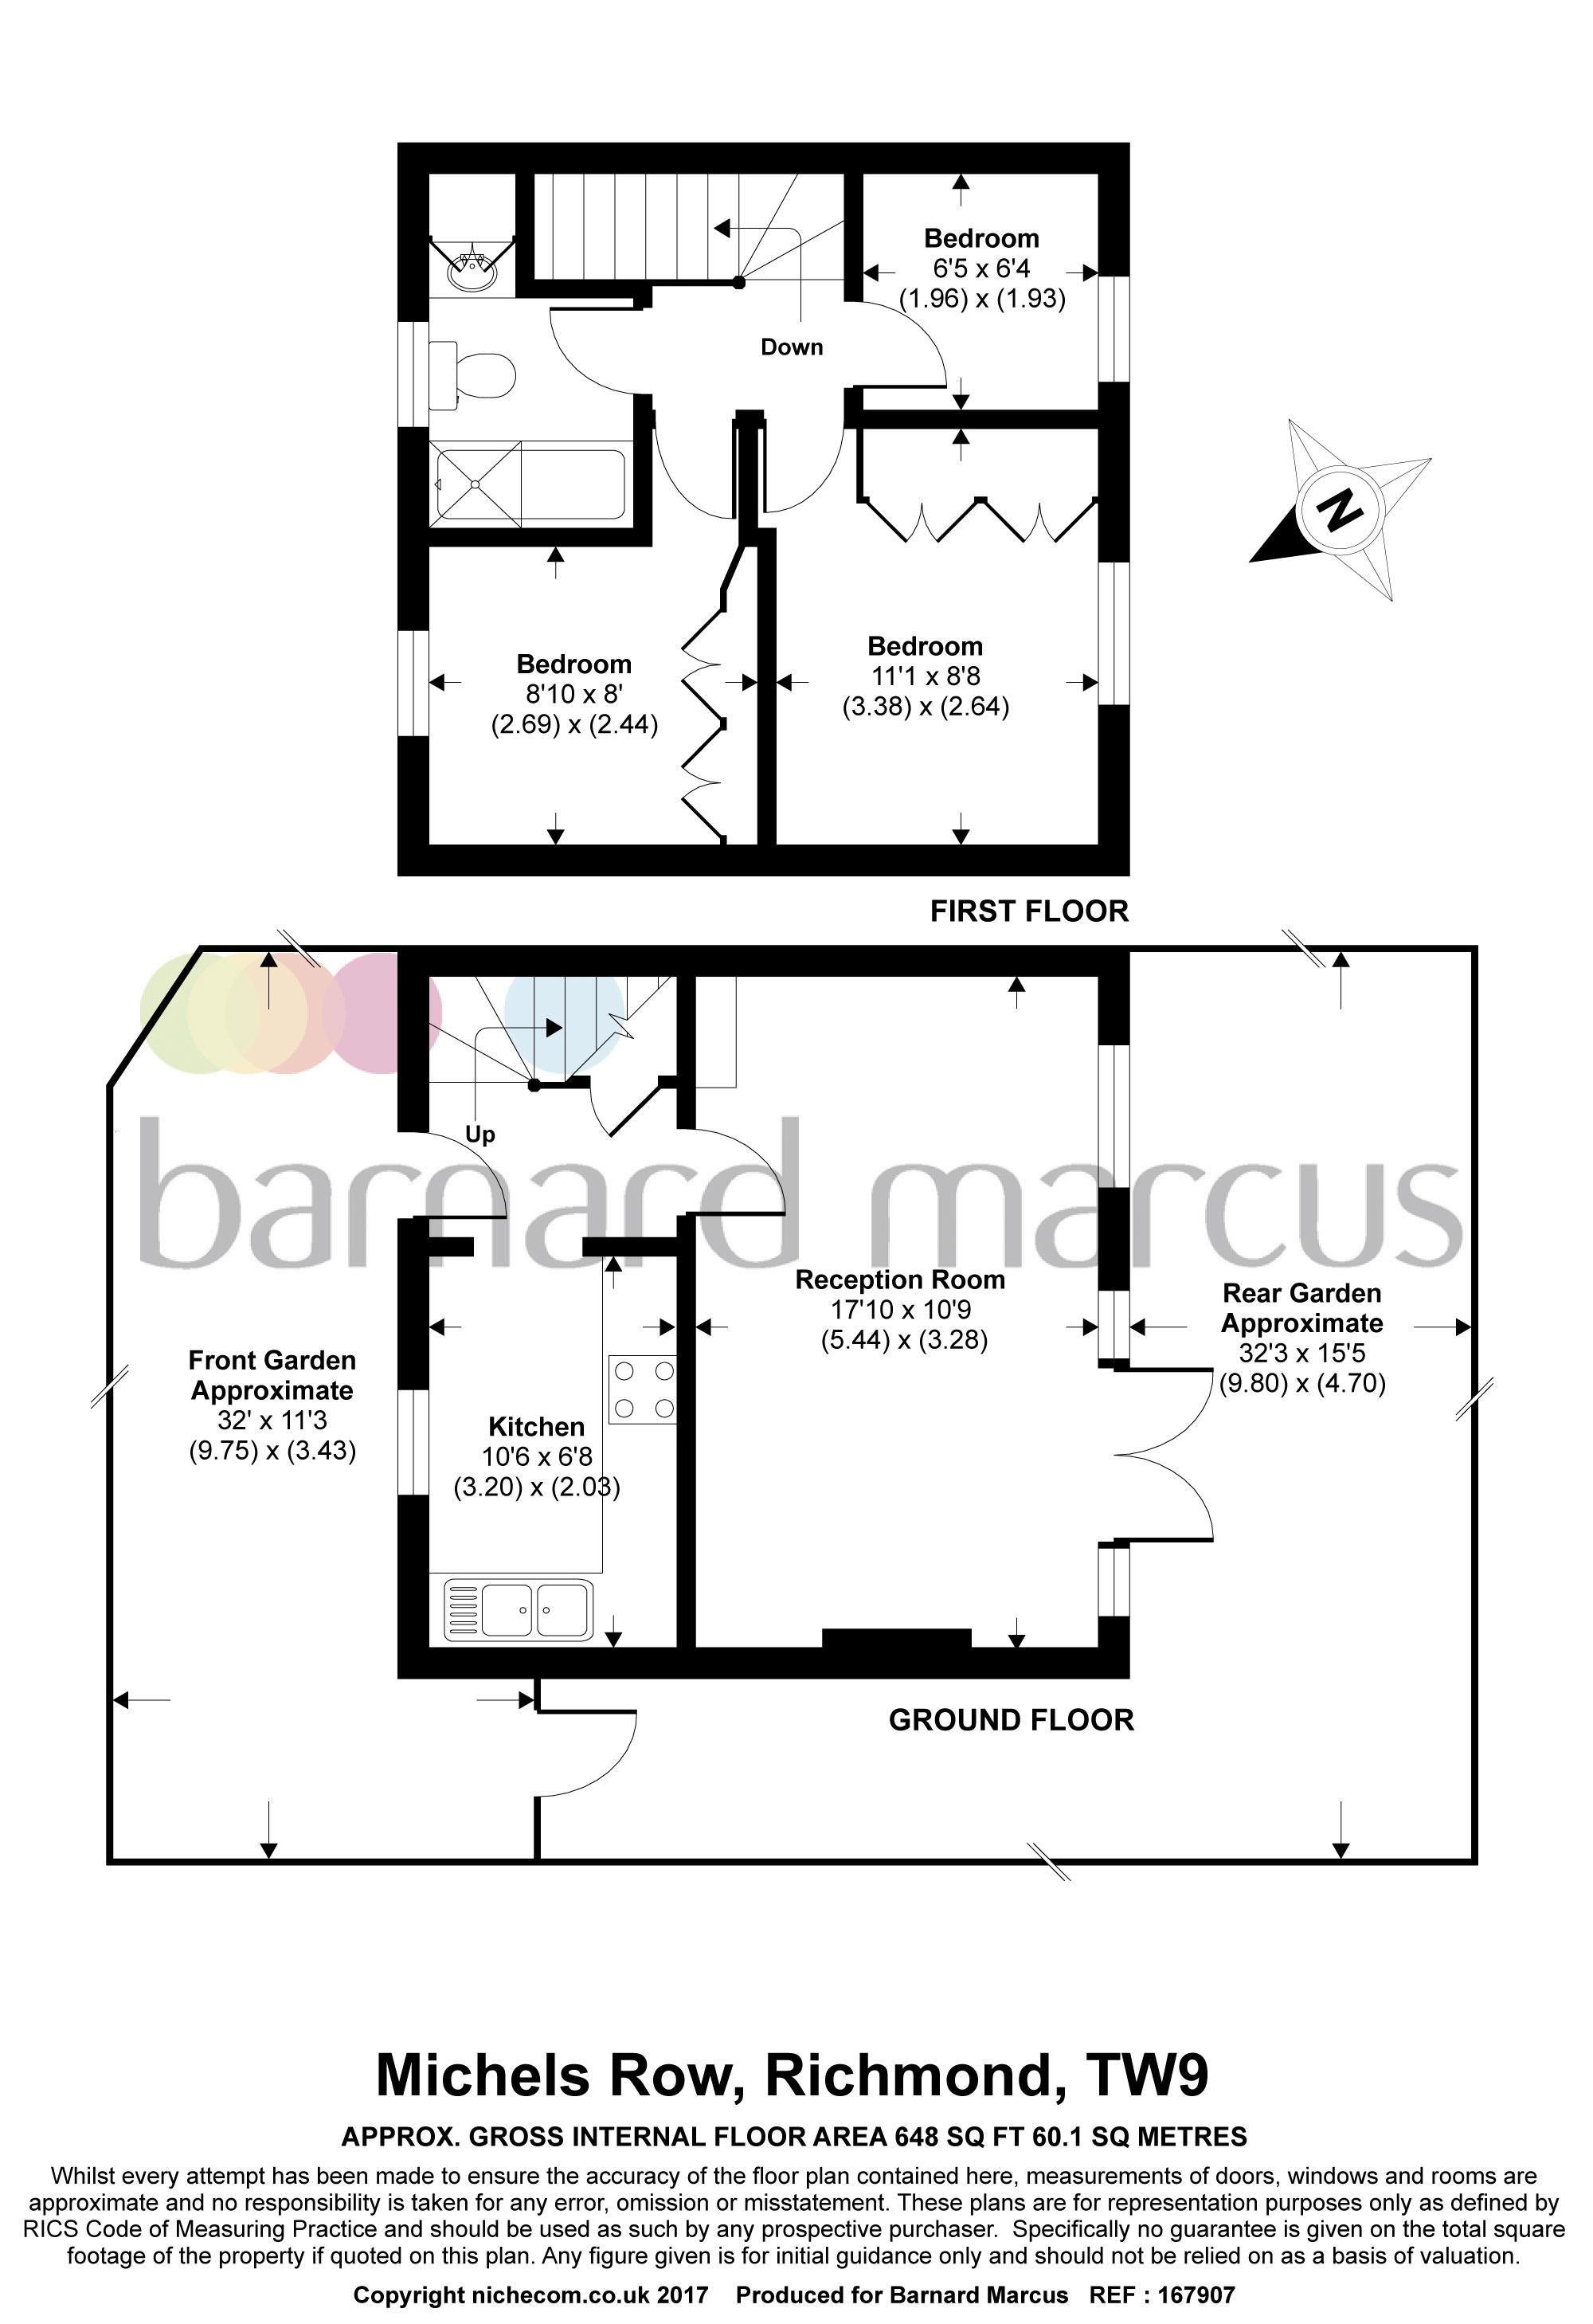 3 Bedrooms  to rent in Michels Row, Richmond, Surrey TW9